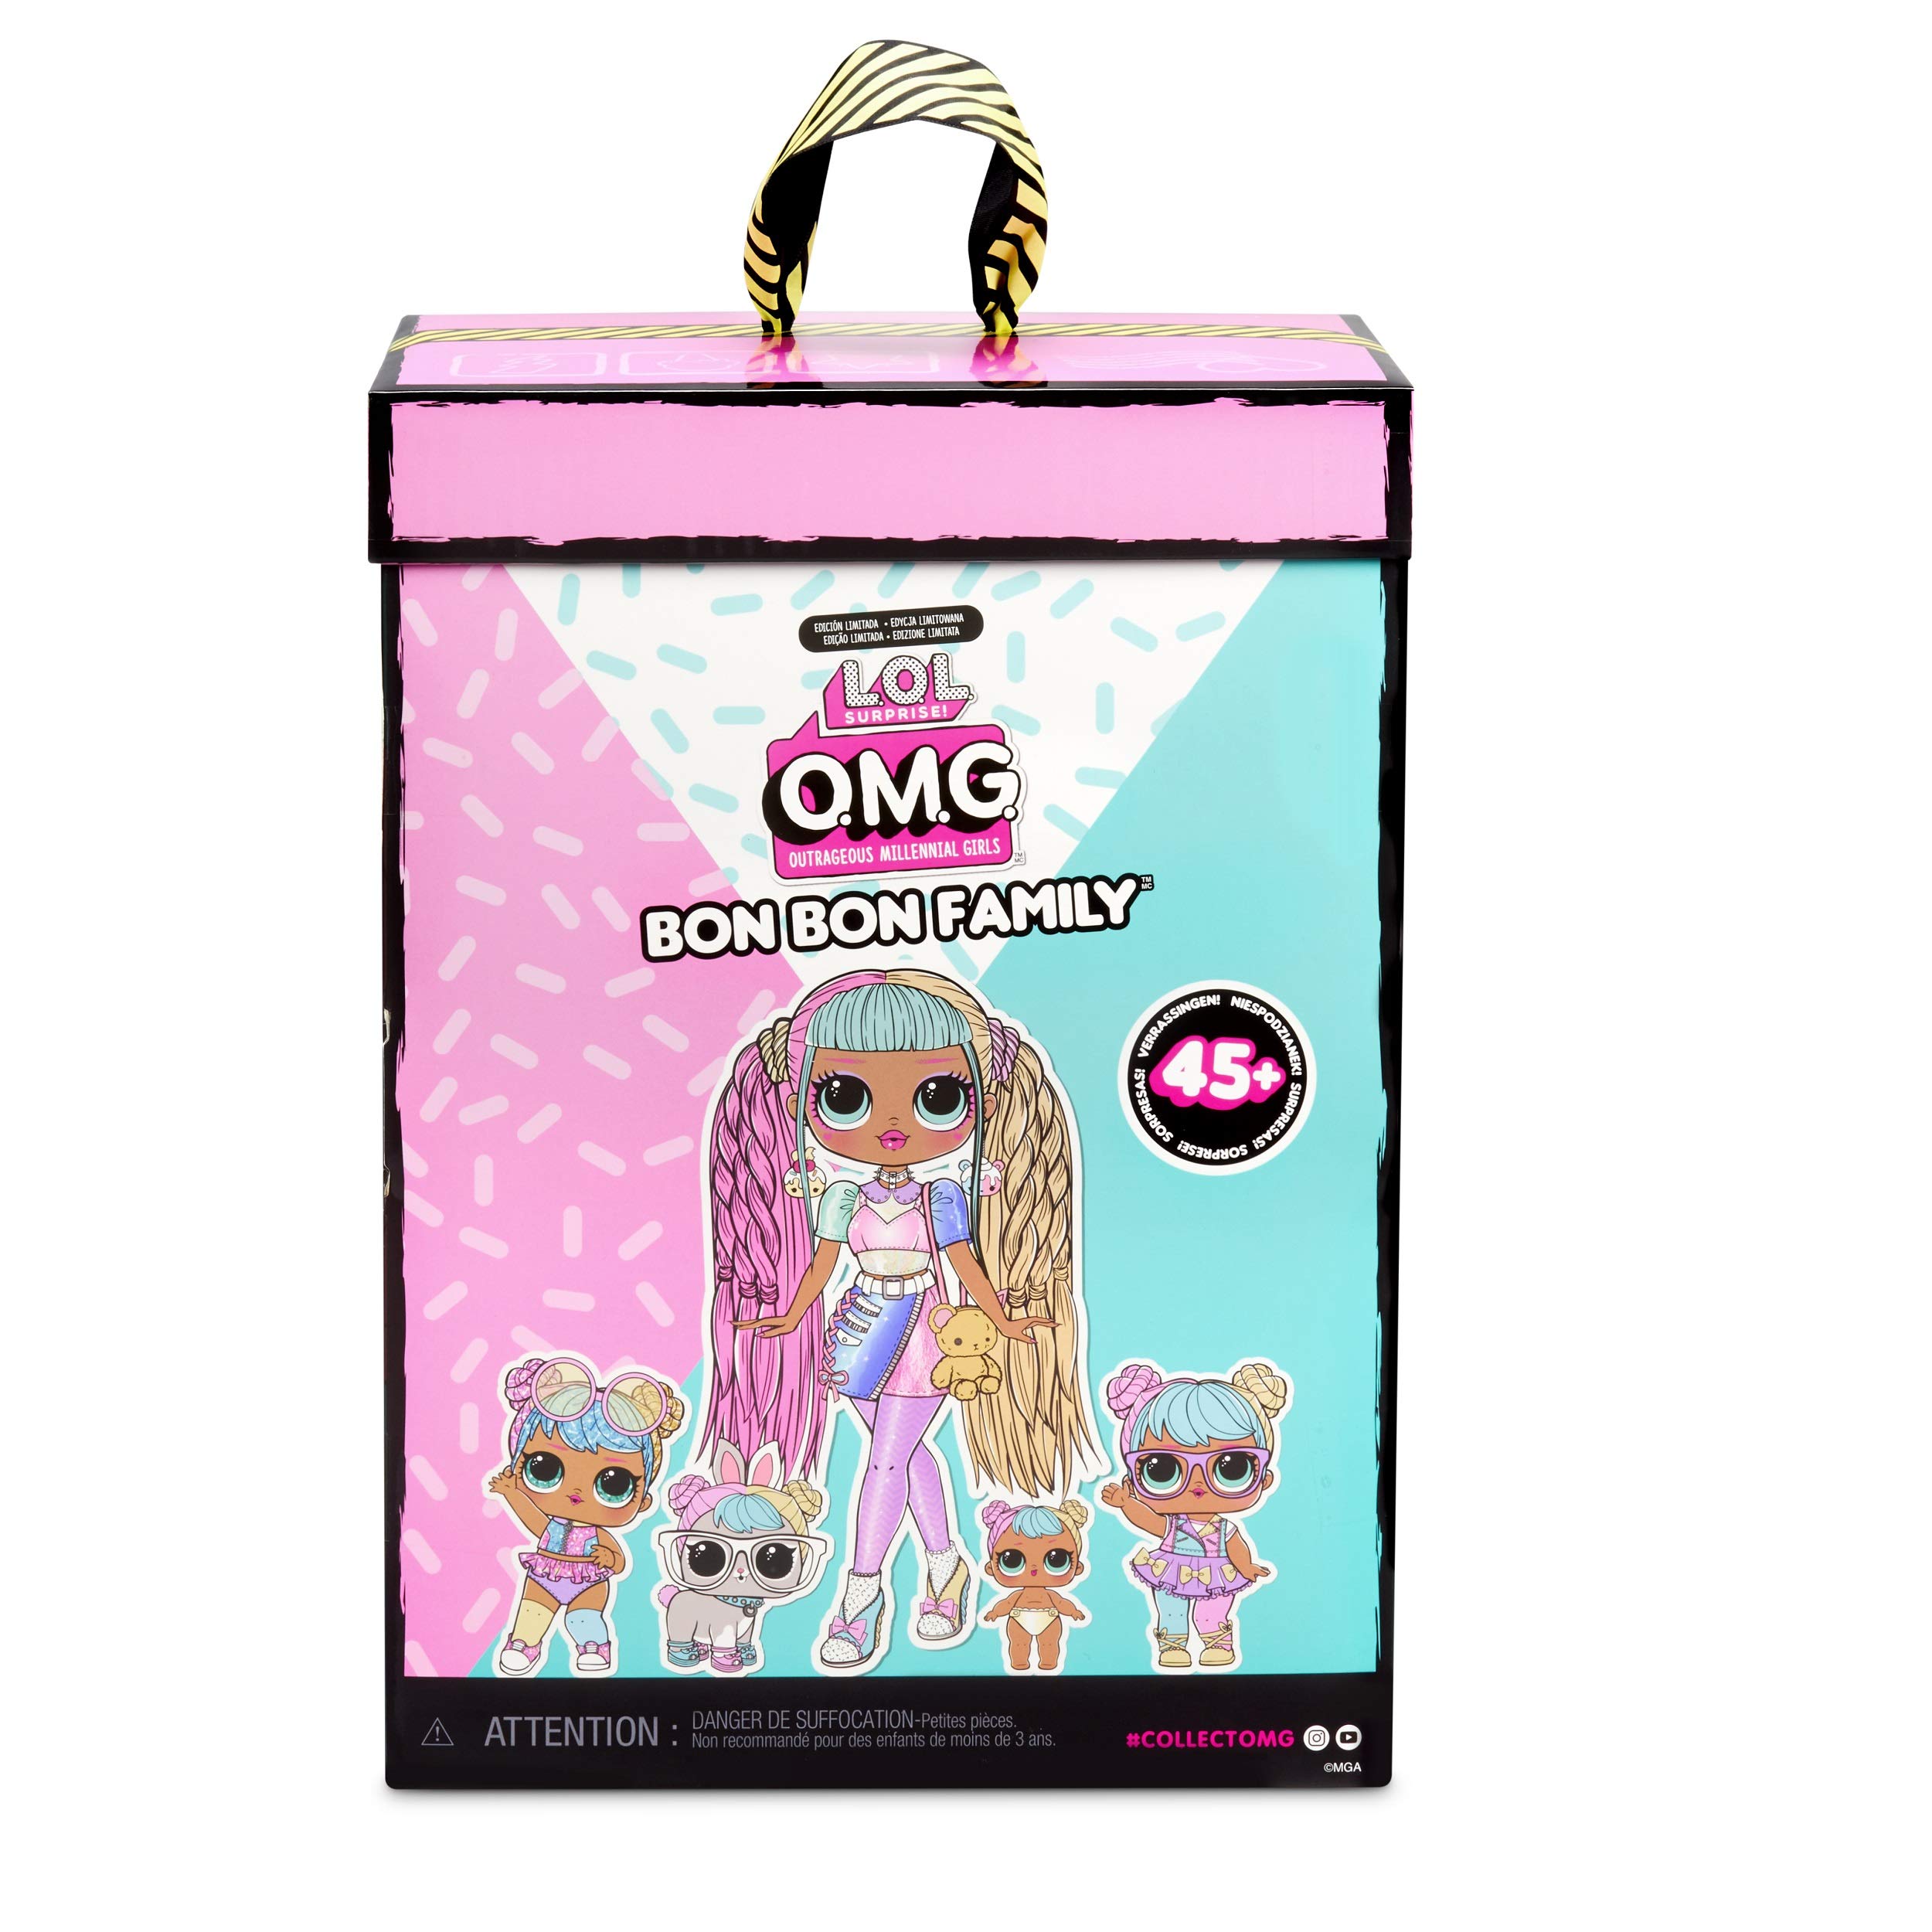 L.O.L. Surprise! OMG Bon Bon Family with 45+ Surprises Including Candylicious OMG Doll, Bon Bon, Bling Bon Bon, Lil Bon Bon, Hop Hop, Accessories, and Foldable Playset | Kids 36 Months - 10 Years Old